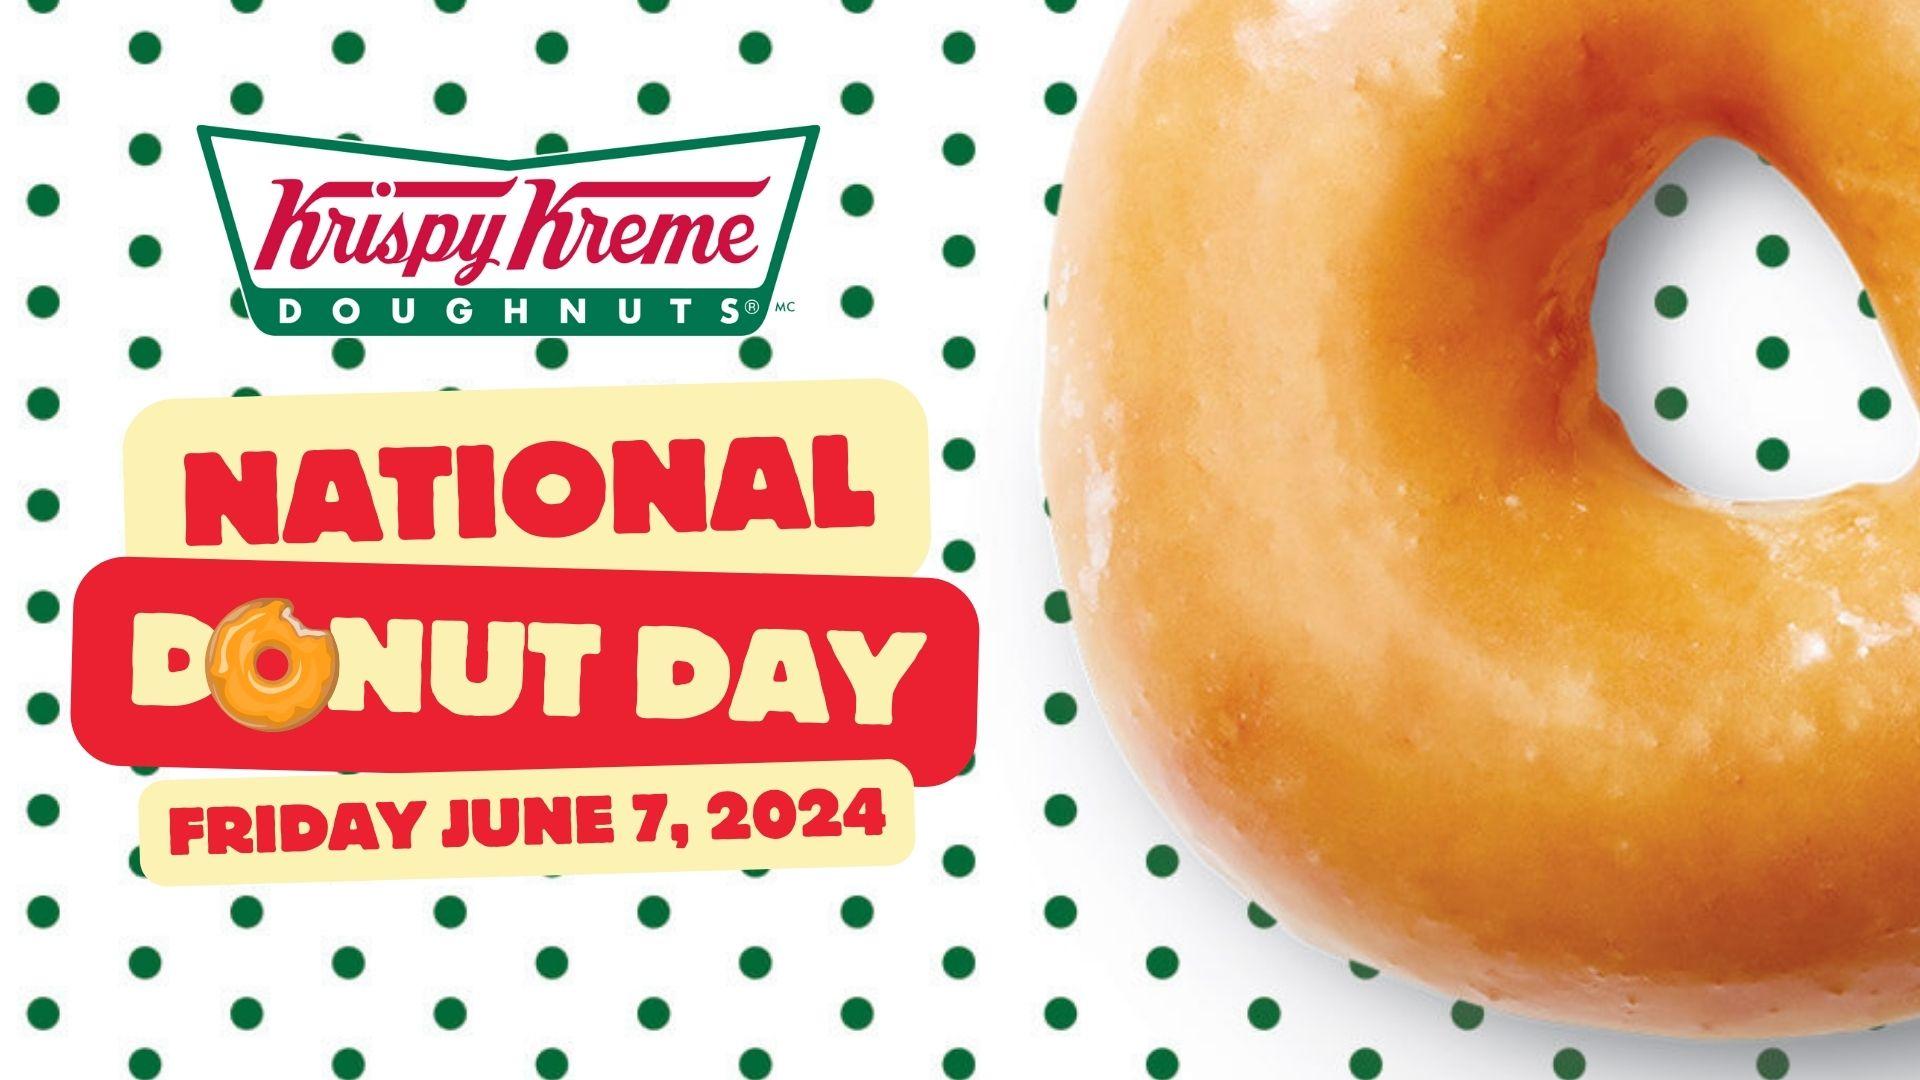 National Donut Day at Krispy Kreme